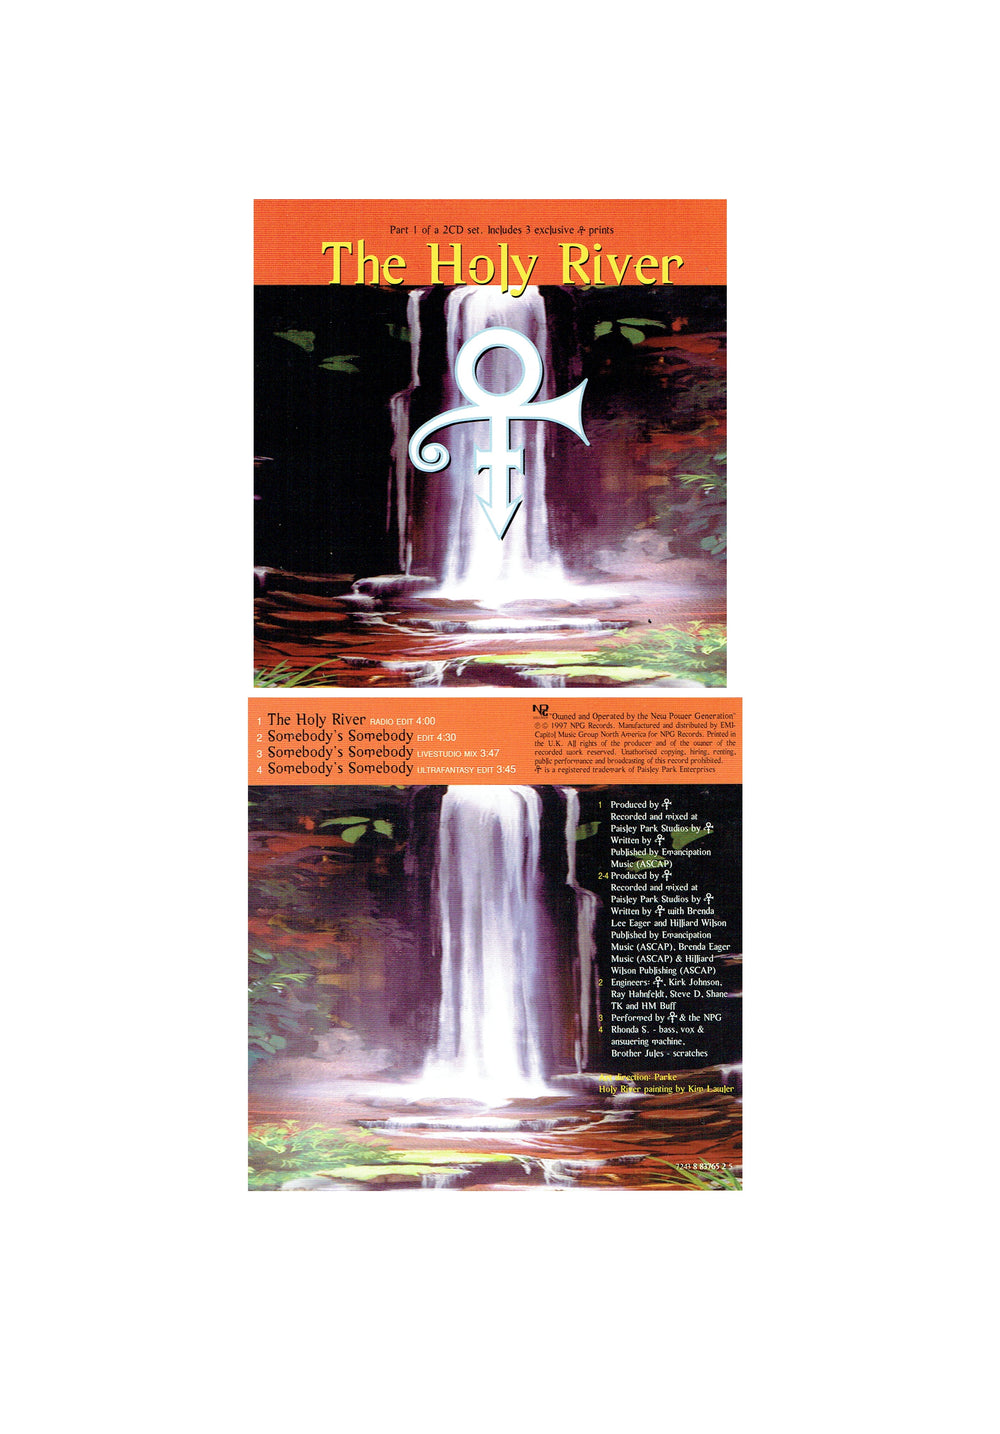 Prince – O(+>The Holy River Part 1 CD Single 1997 Original Release (No Cards)